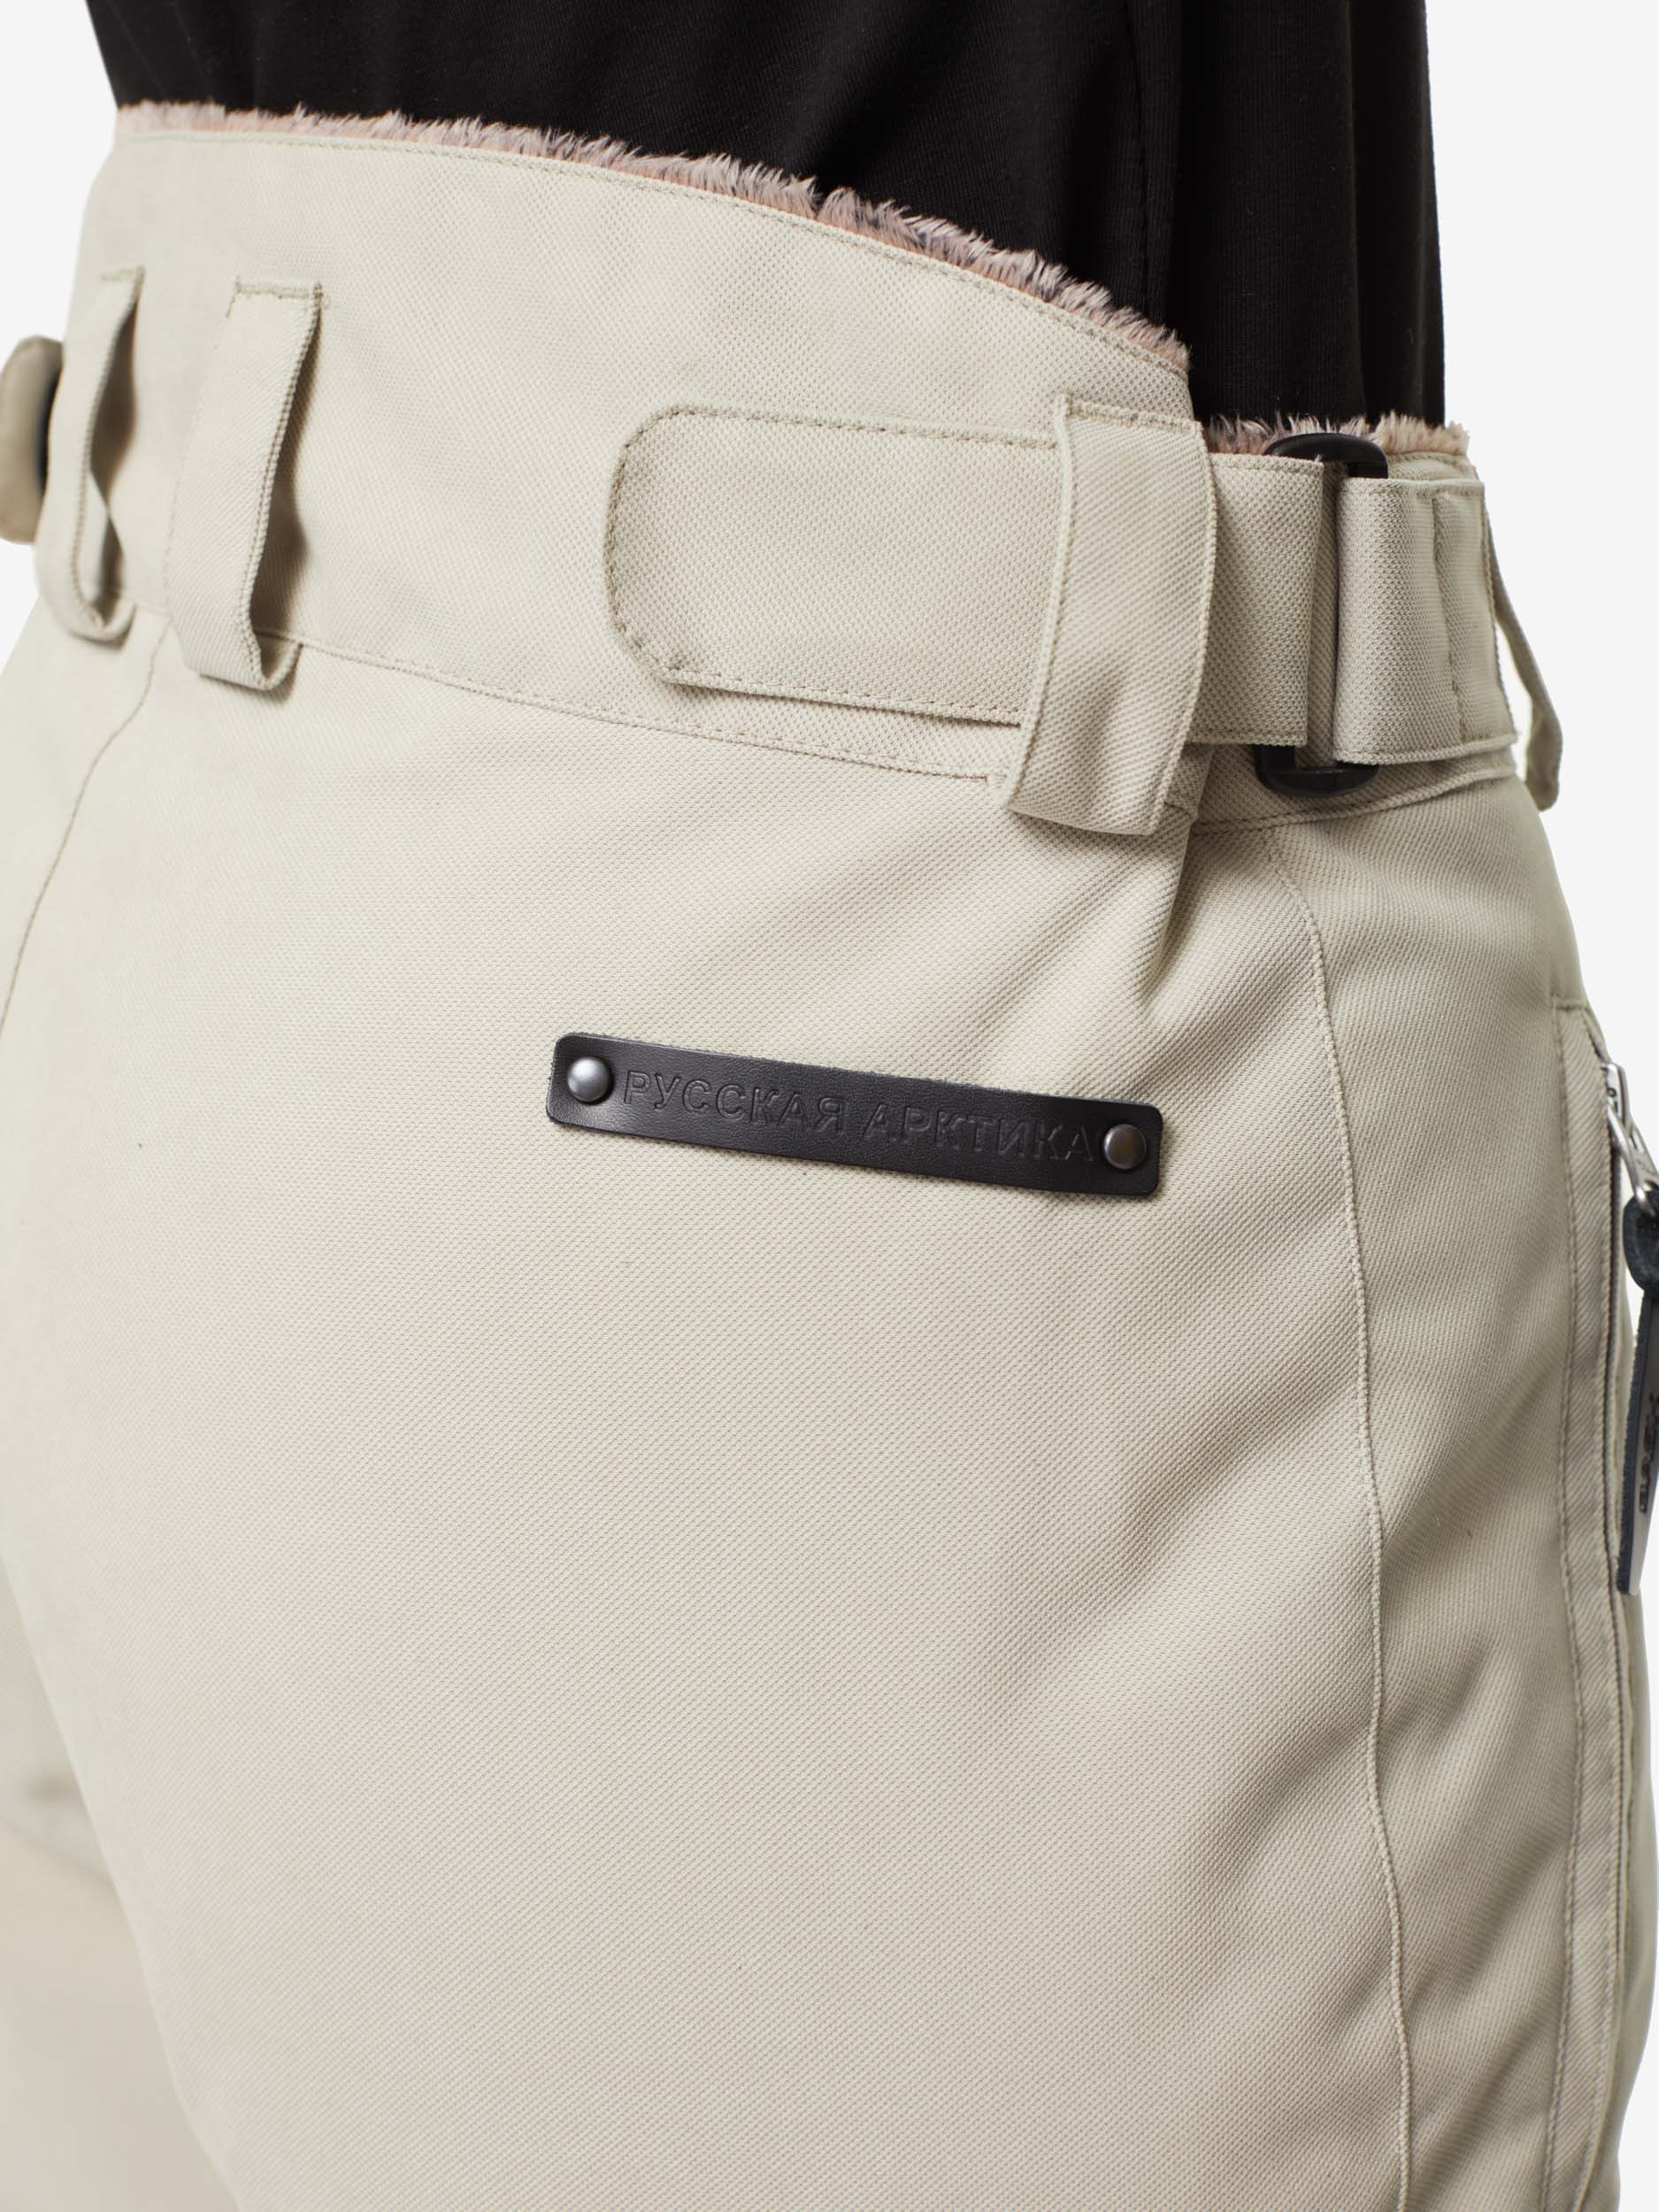 Пуховые брюки BASK, размер 50, цвет коричневый 3780-9905-050 MANARAGA - фото 7